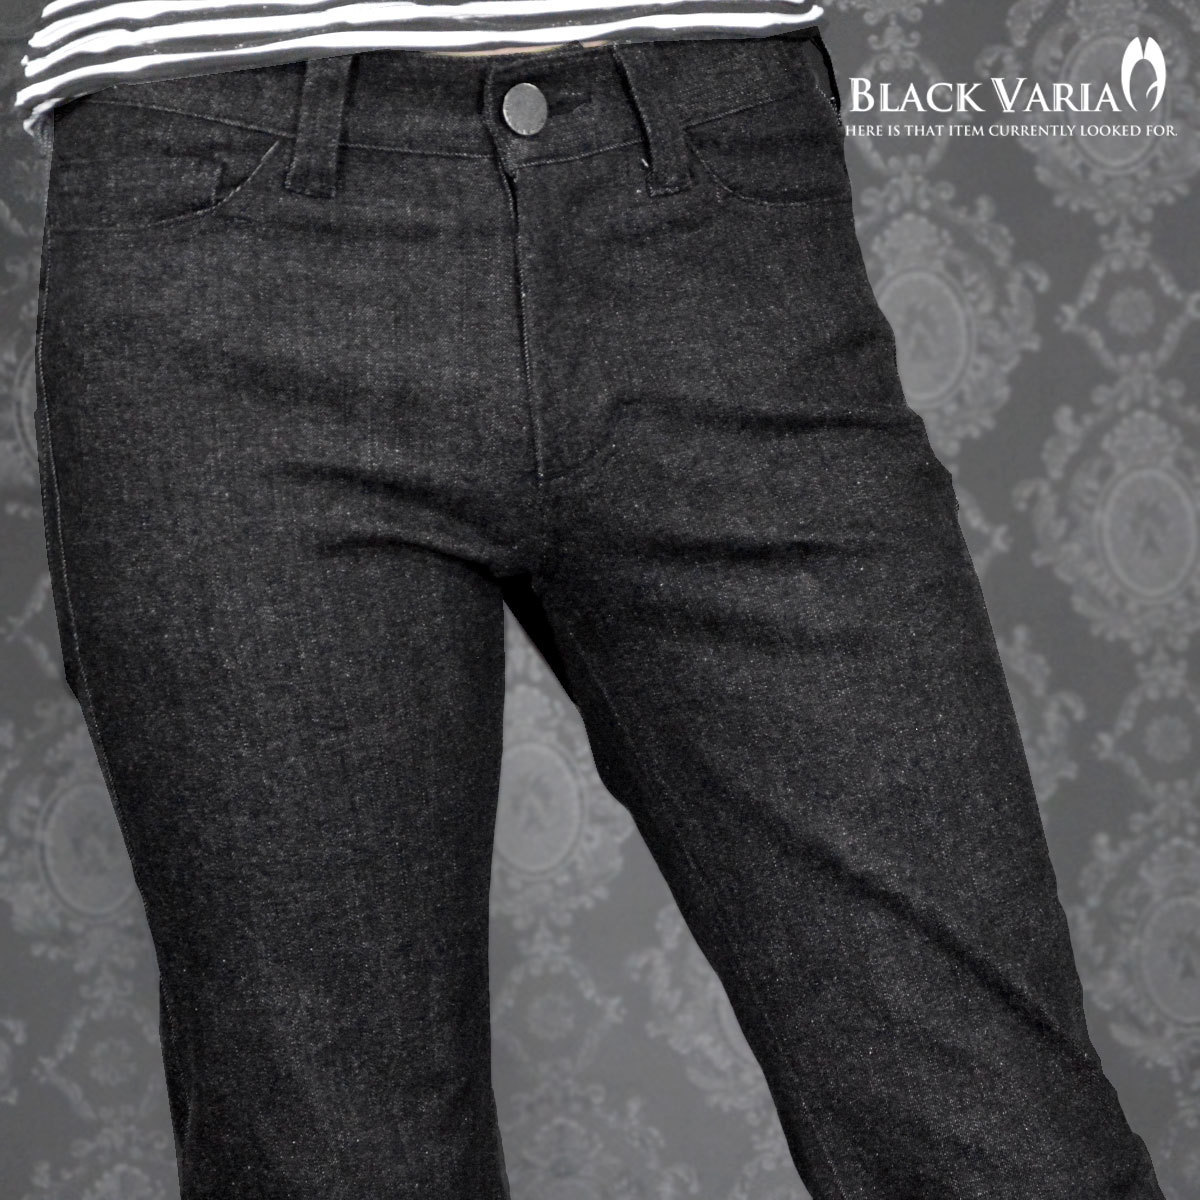 162252-bk BLACK VARIA ベルボトム ブーツカット ジーンズ 裾広 デニム 5ポケット パンツ メンズ (ブラック黒) 3L33 モード 股上浅め_画像6